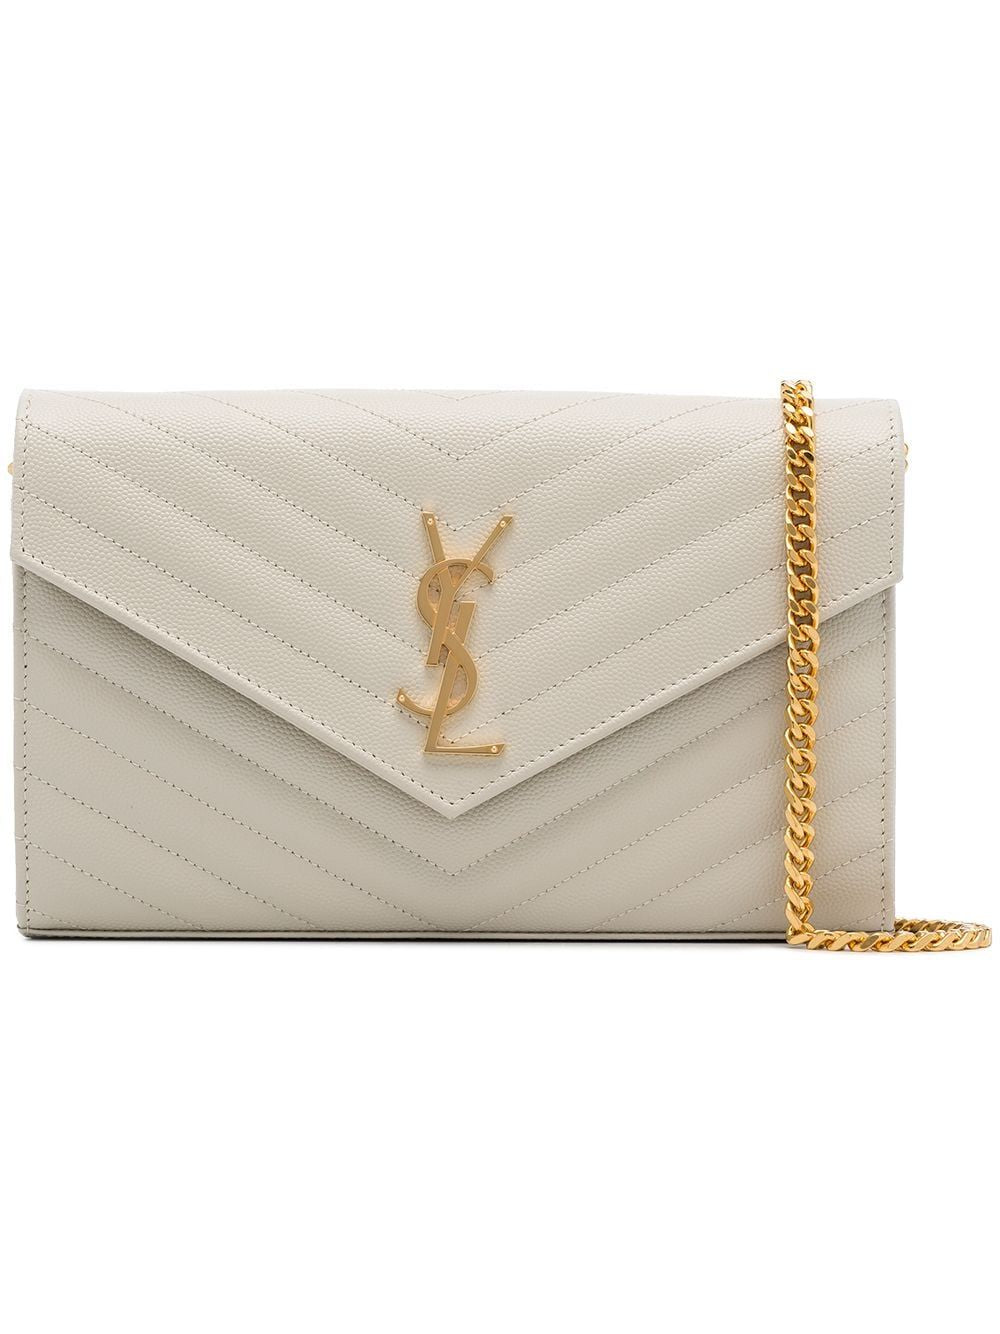 升級你的時尚風格 - 雅SLY的金色YSL標誌牌美特莱斯小牛皮CASSANDRE手包